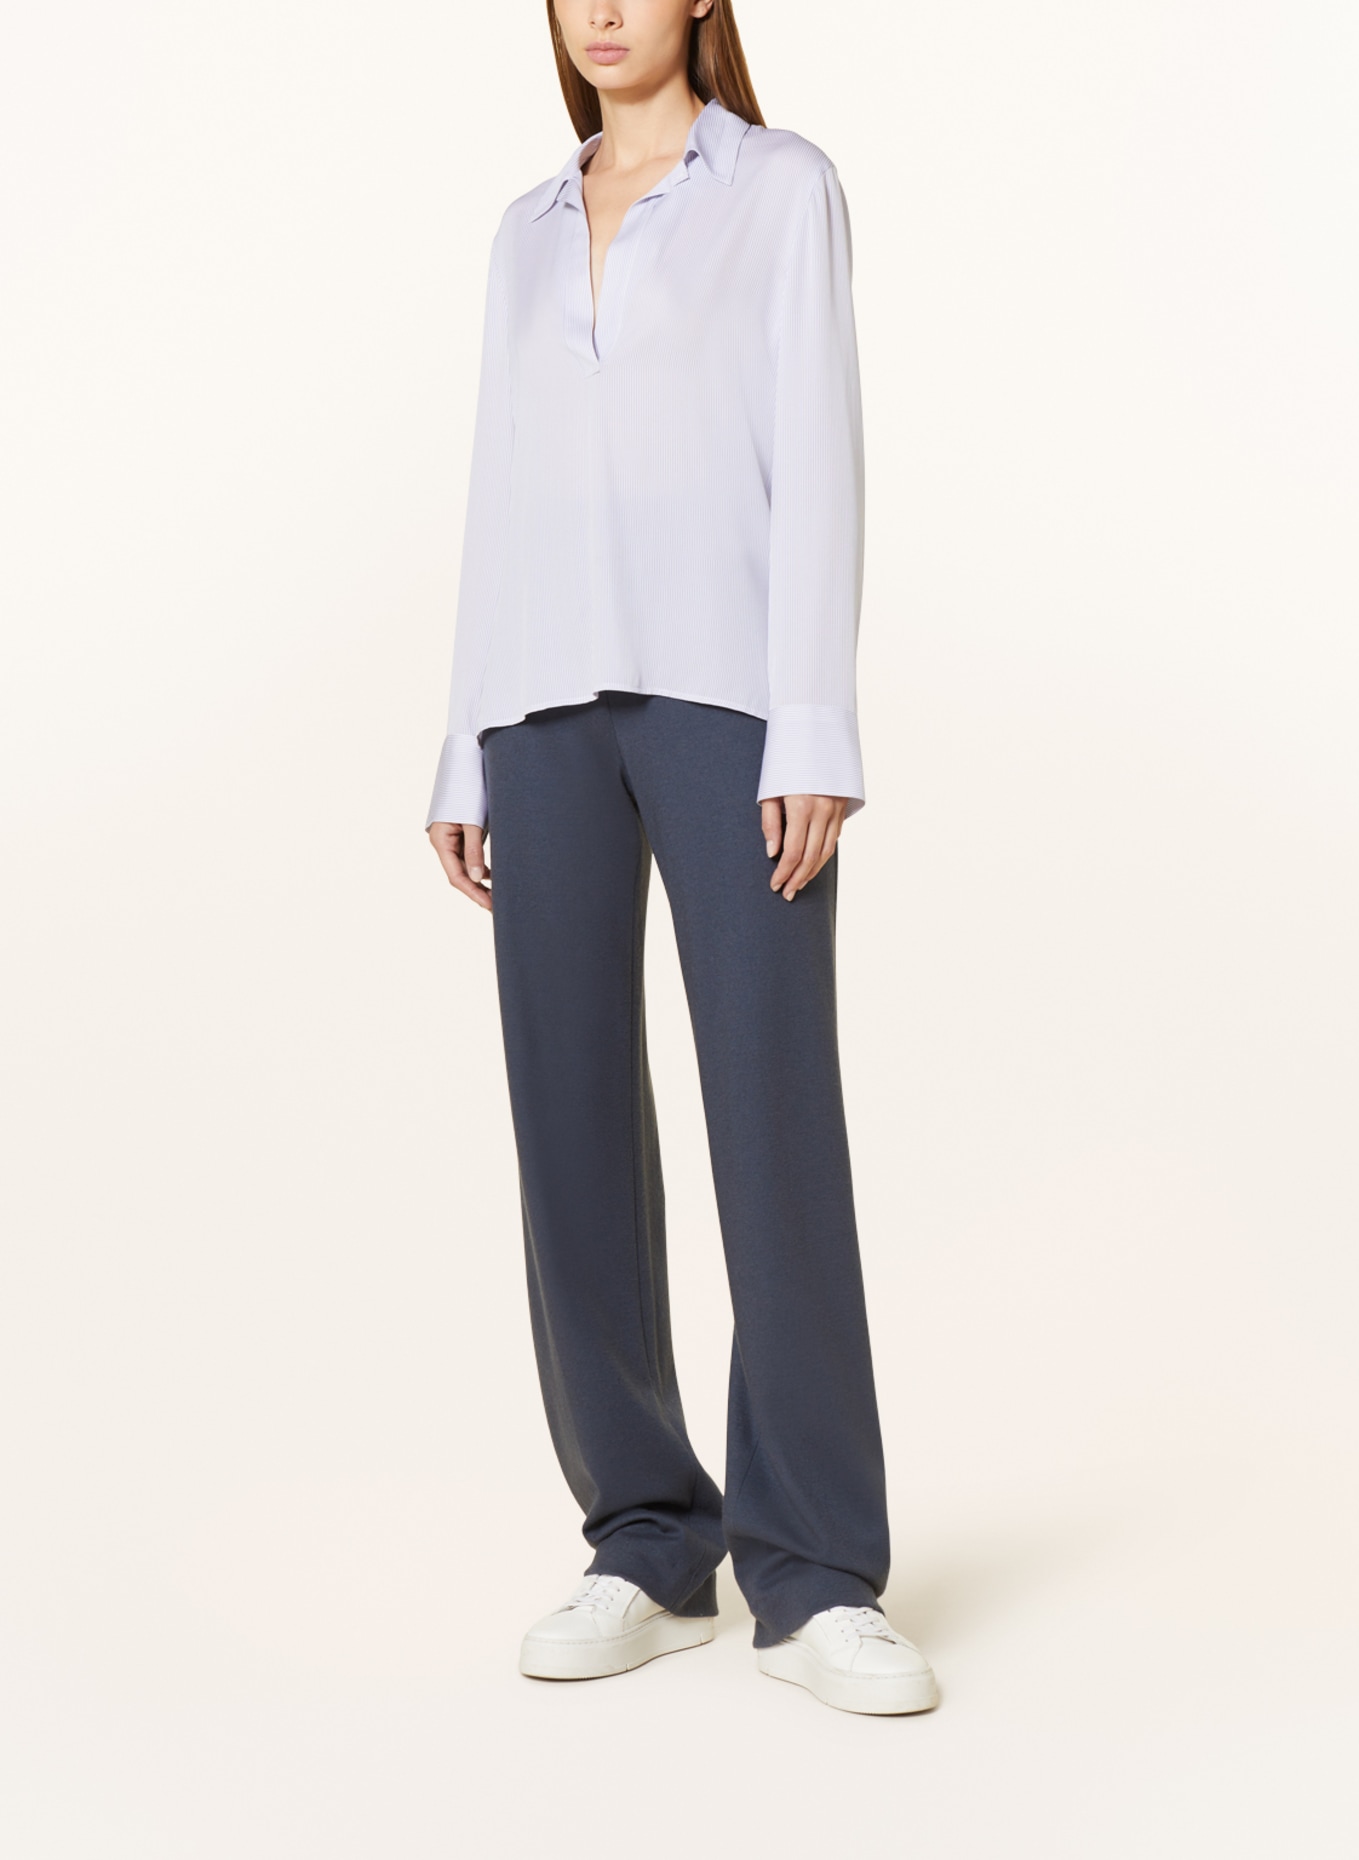 VINCE Shirt blouse, Color: LIGHT BLUE/ WHITE (Image 2)